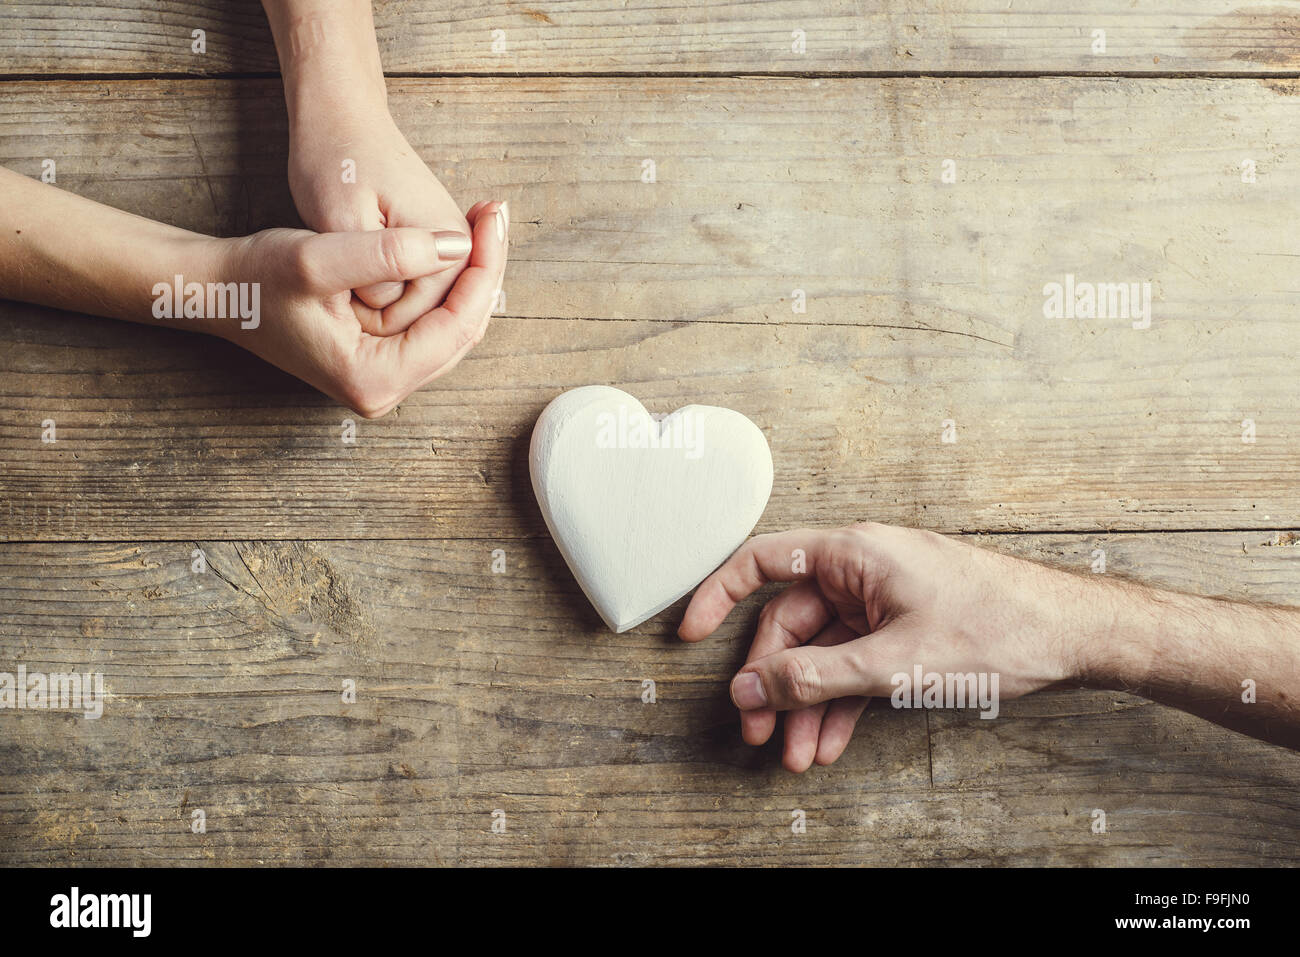 Offrant un homme tendrement coeur blanc à une femme. Studio shot sur un fond de bois, vue de dessus. Banque D'Images